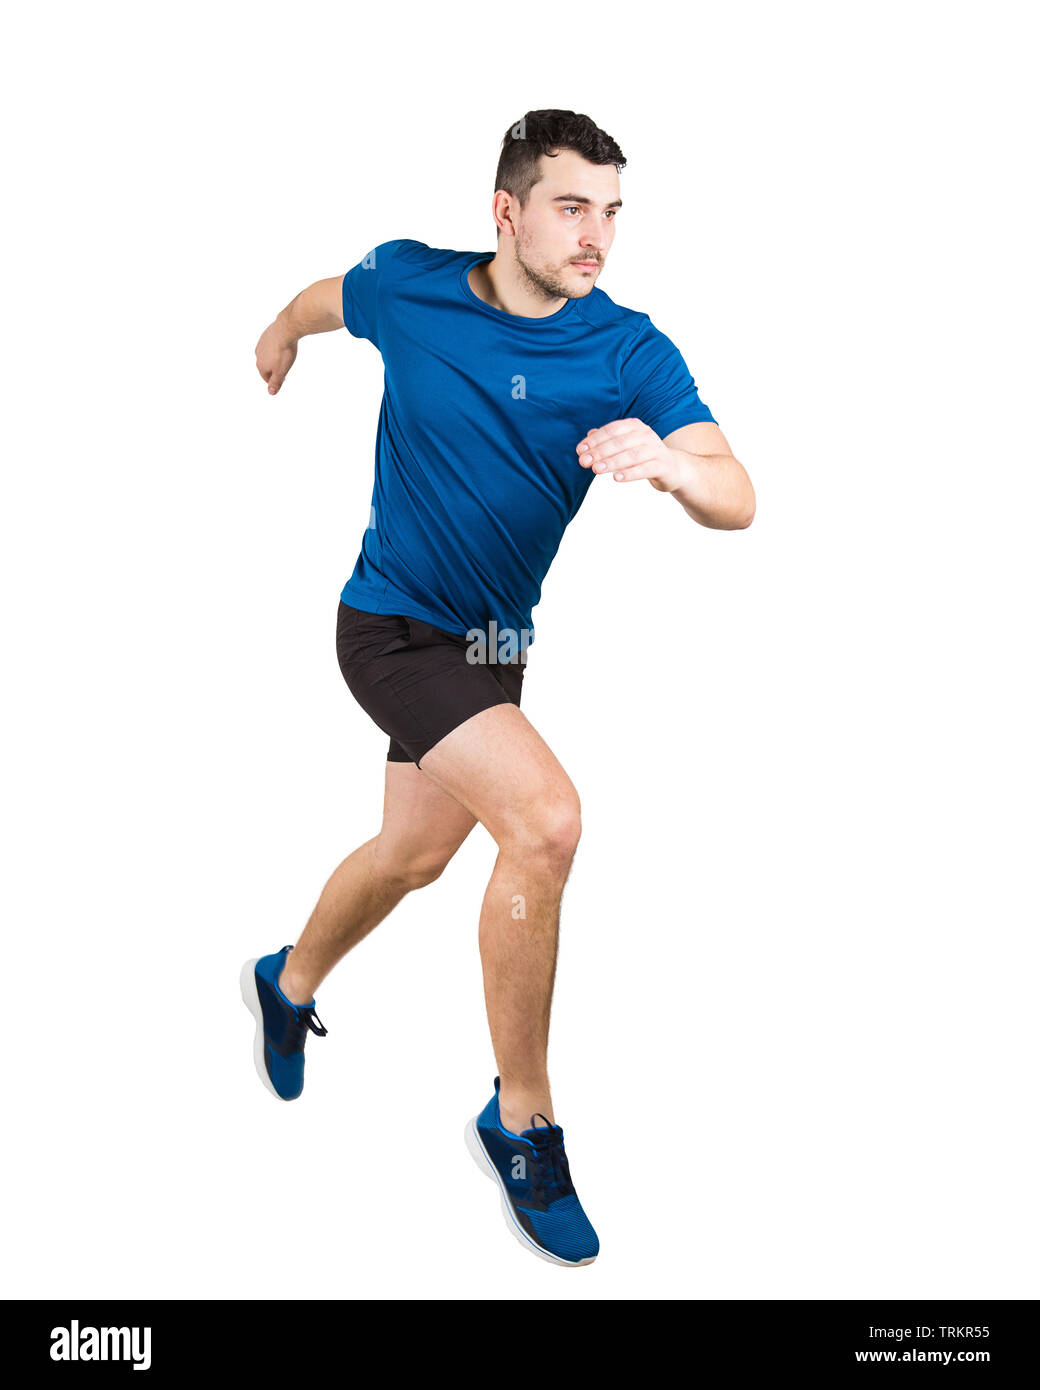 De toute la longueur déterminée caucasian man running vitesse rapide athlète isolated over white background. Jeune mec runner vêtu de noir et bleu sportswear Banque D'Images